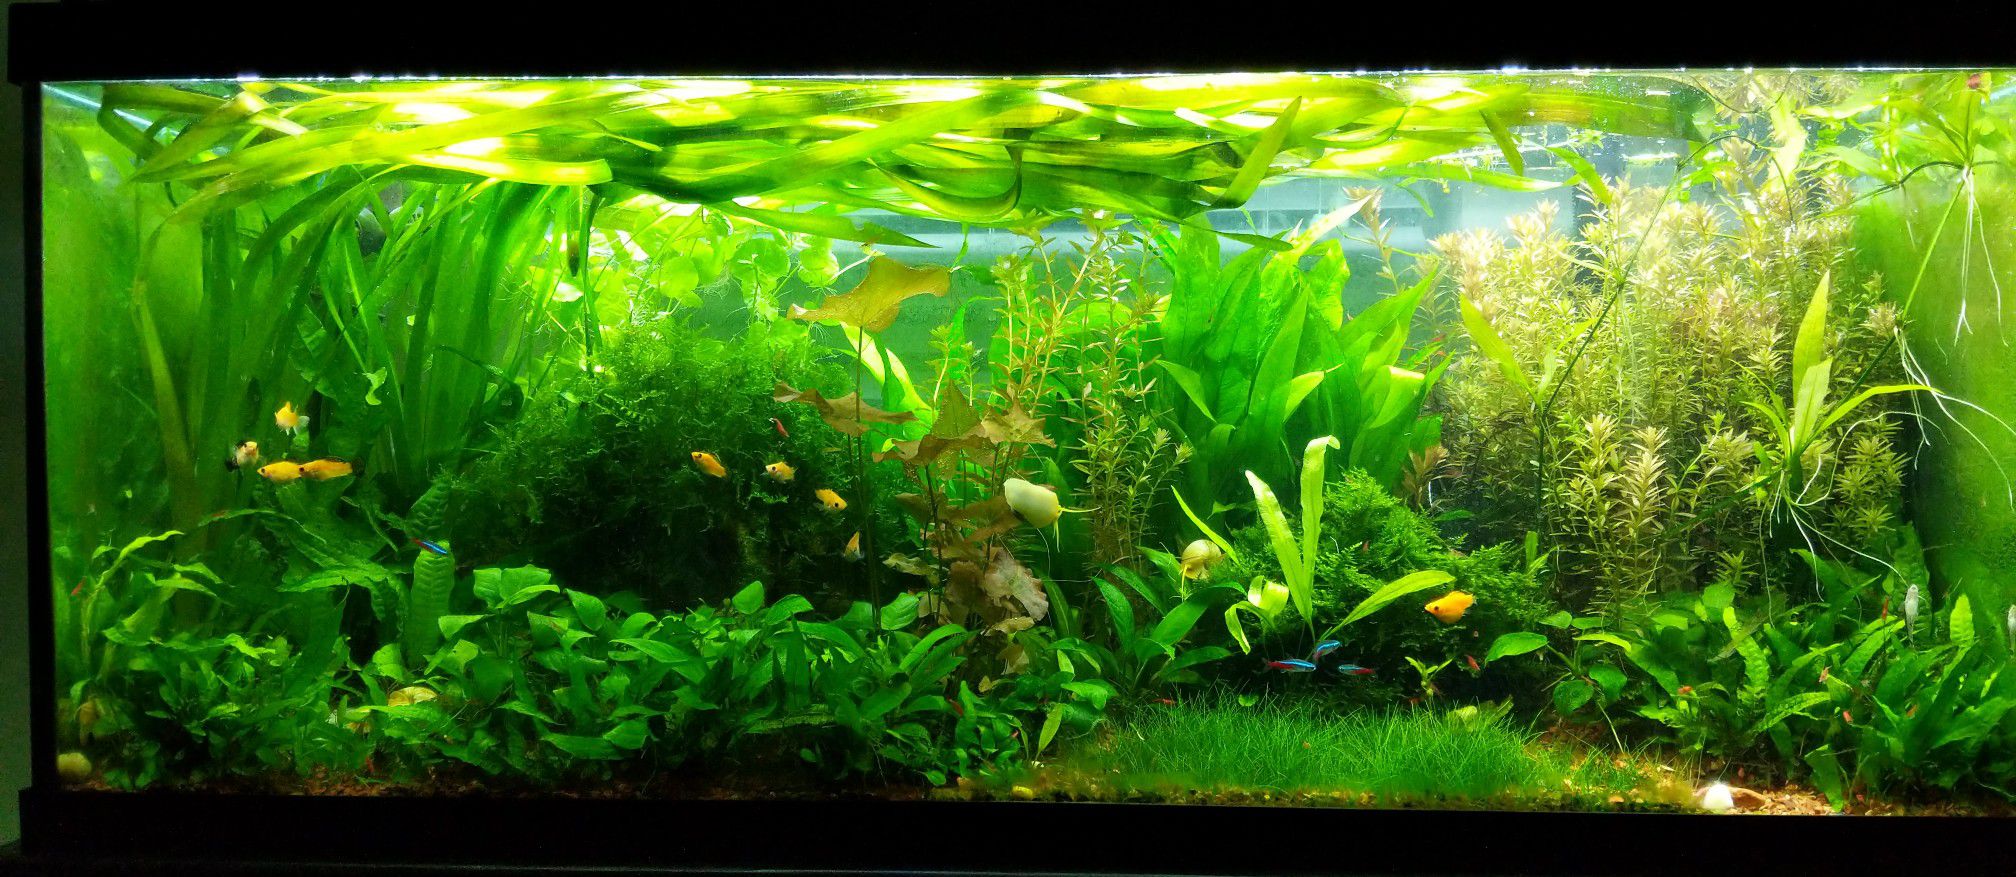 Live aquarium plants, natural fish tank decor and filter